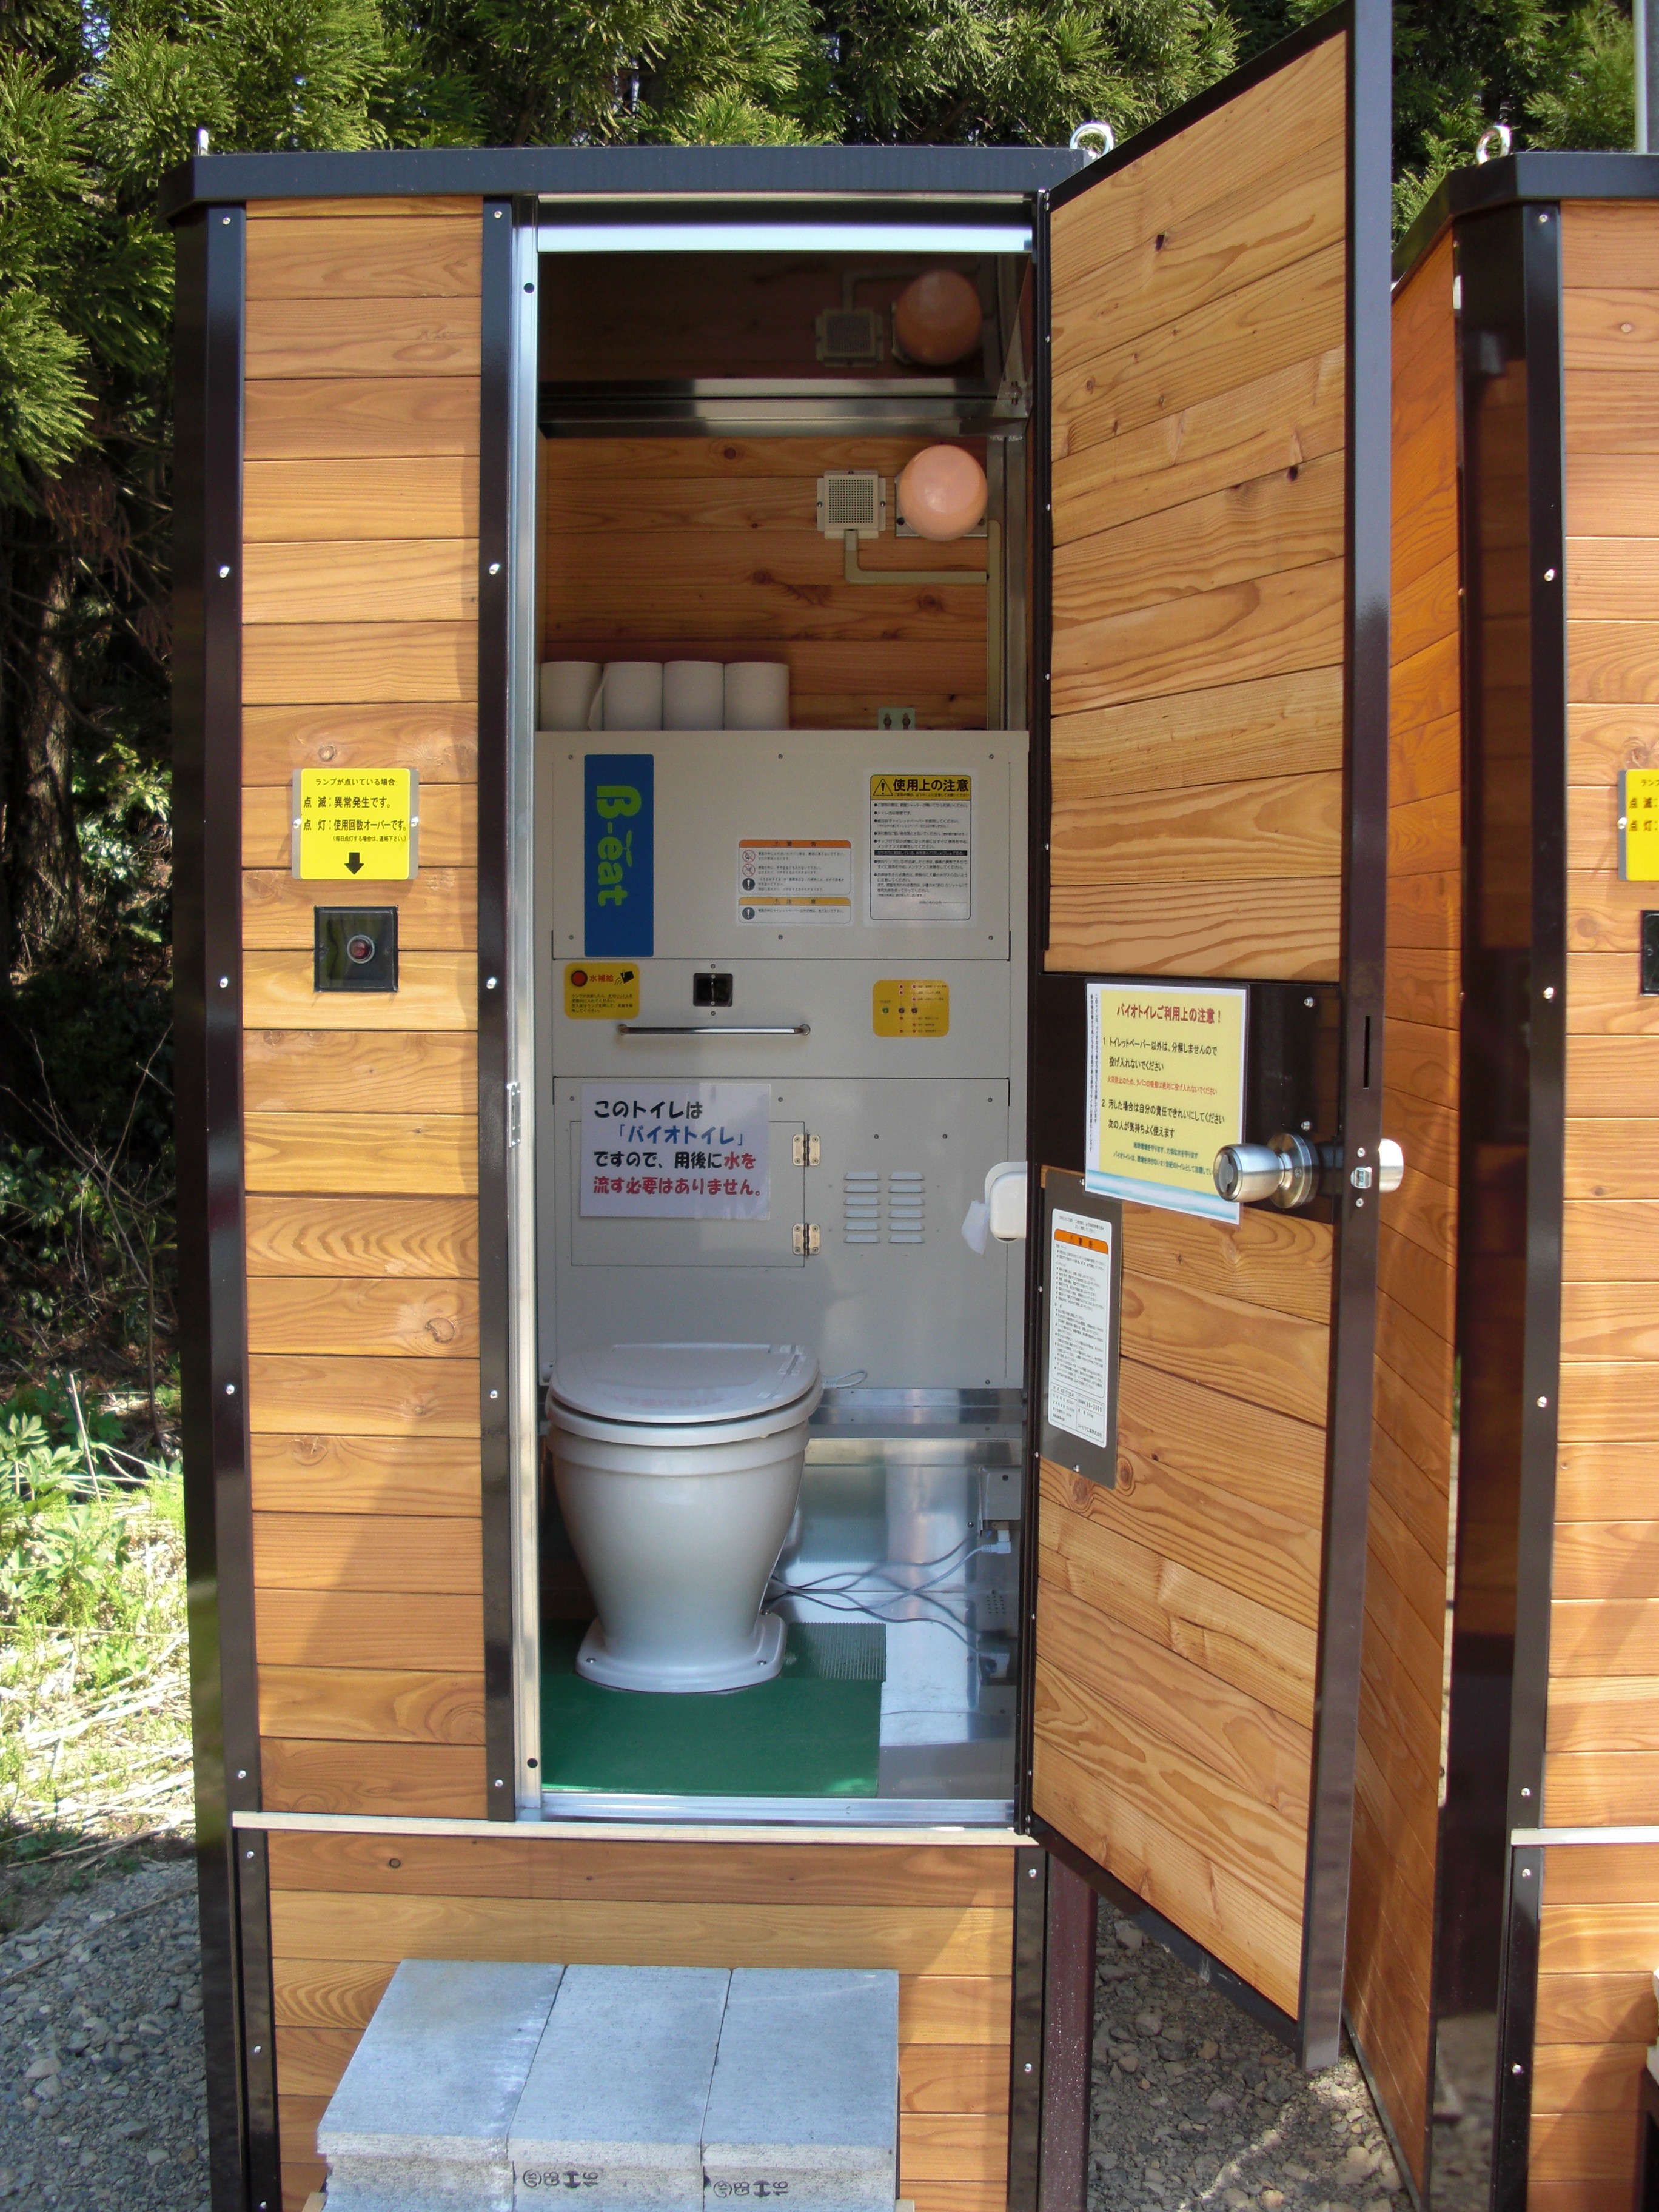 バイオトイレ 「快適トイレ」標準仕様対応 北日本建材リース株式会社